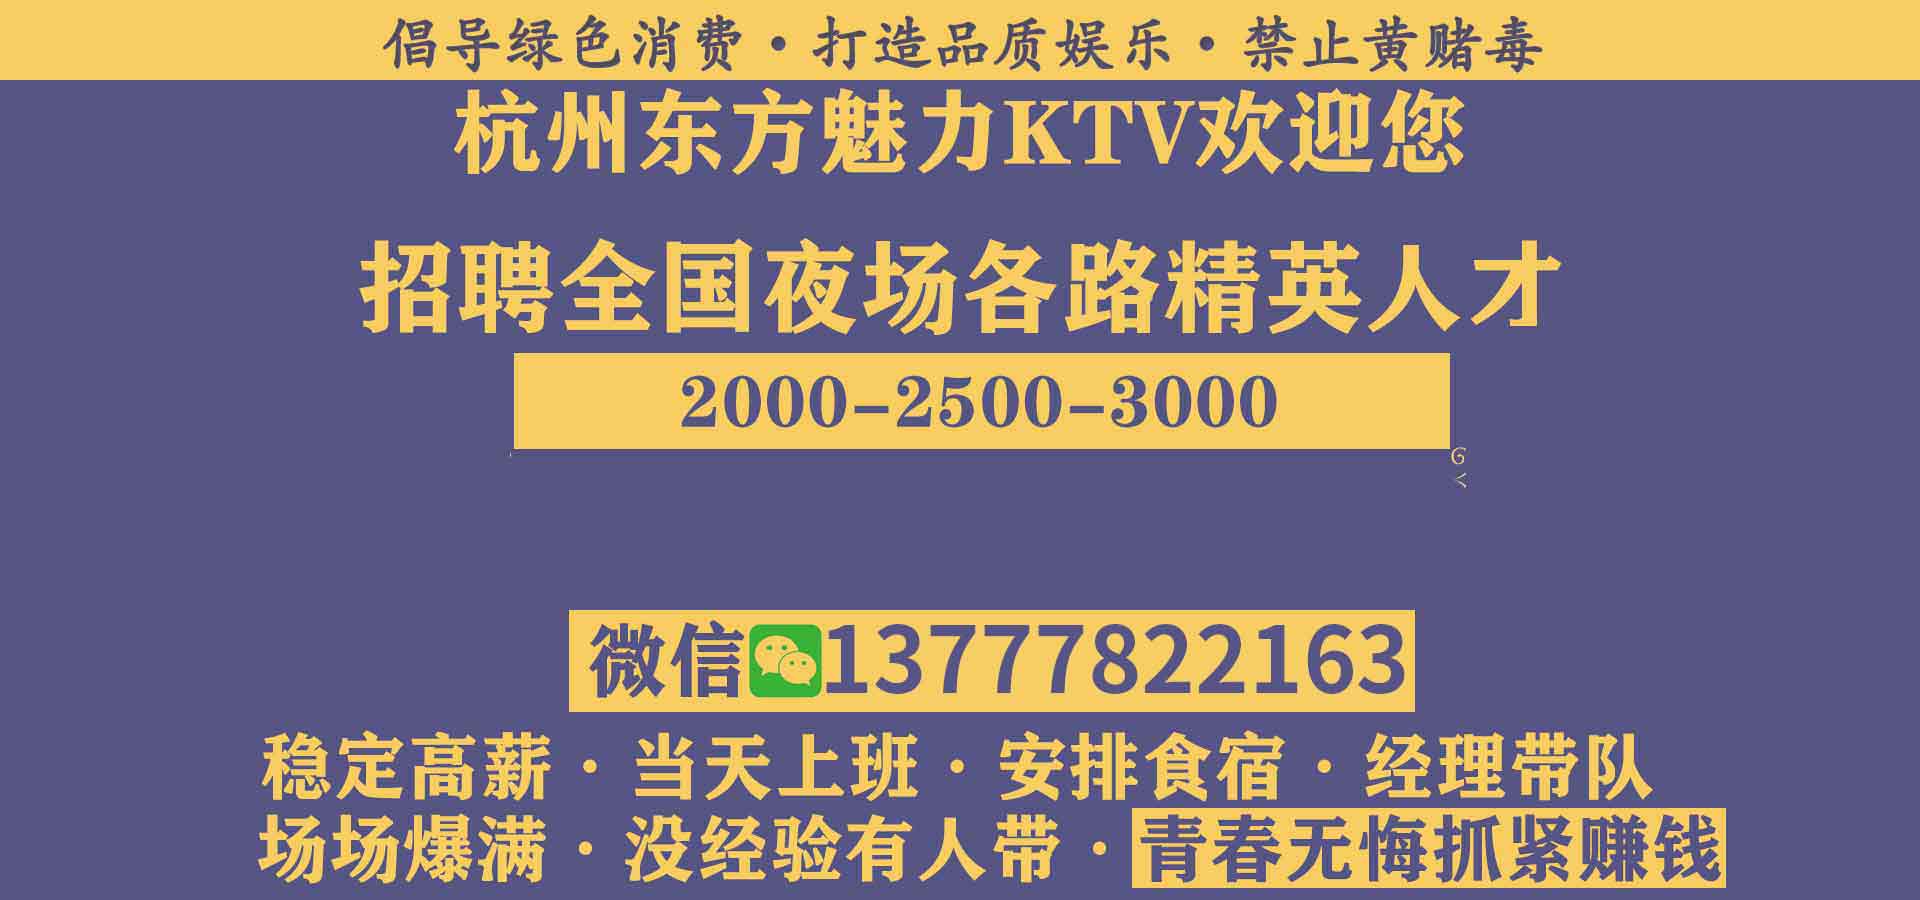 杭州罗曼达KTV最高小费夜场招聘模特,入职需要什么条件